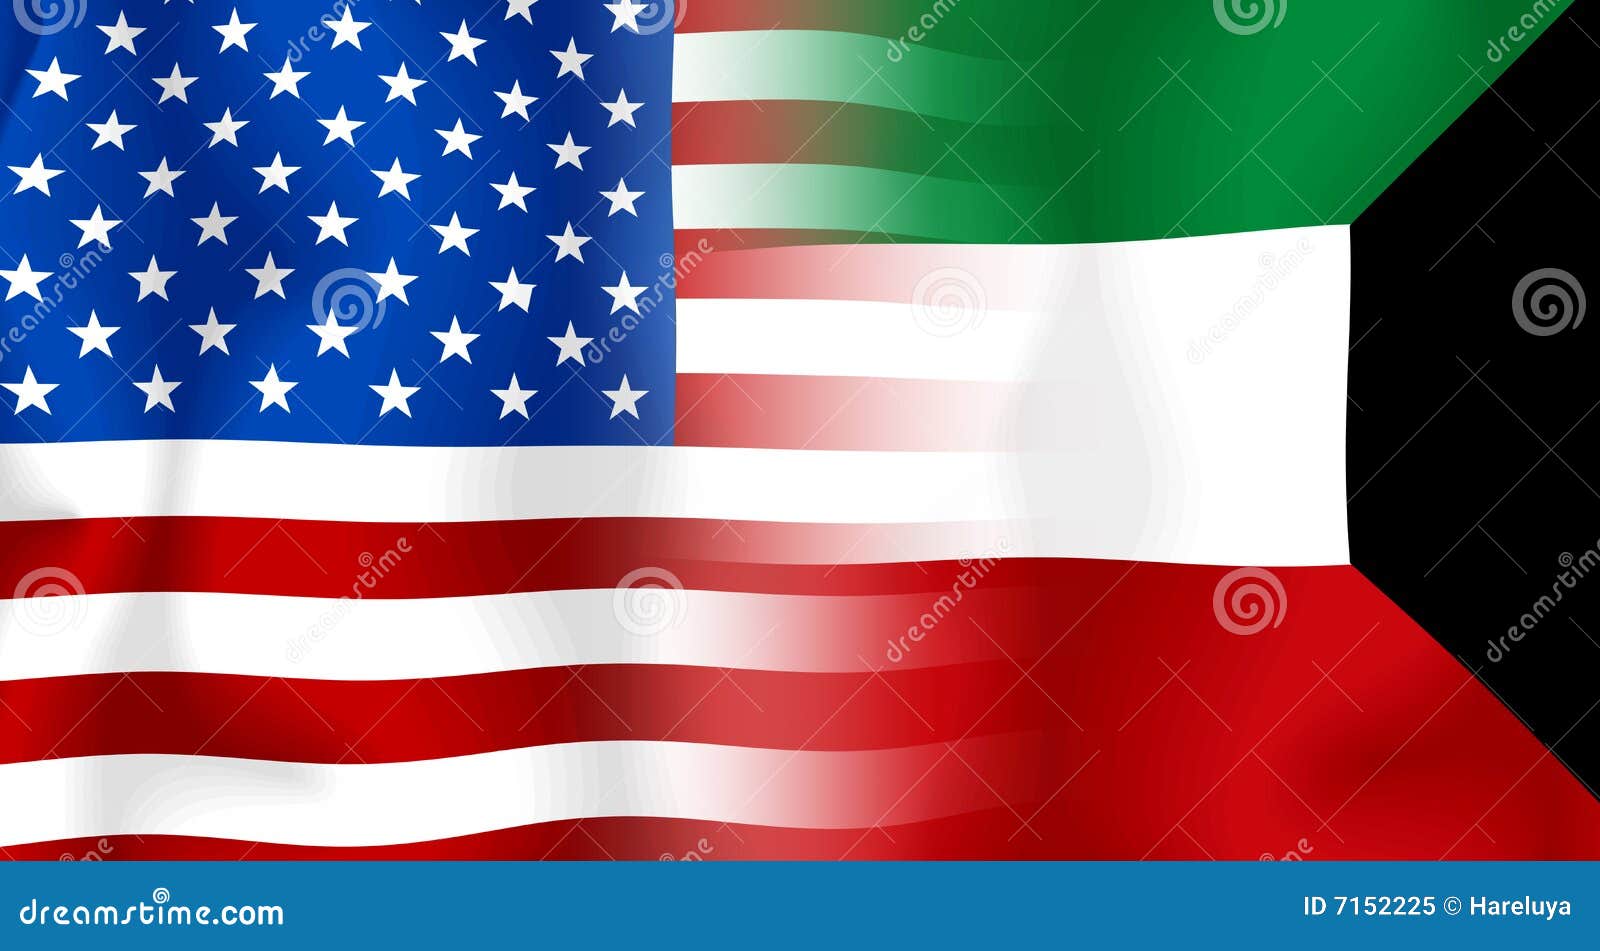 Usa-Kuwait Flag stock illustration. Image of star, burn - 7152225